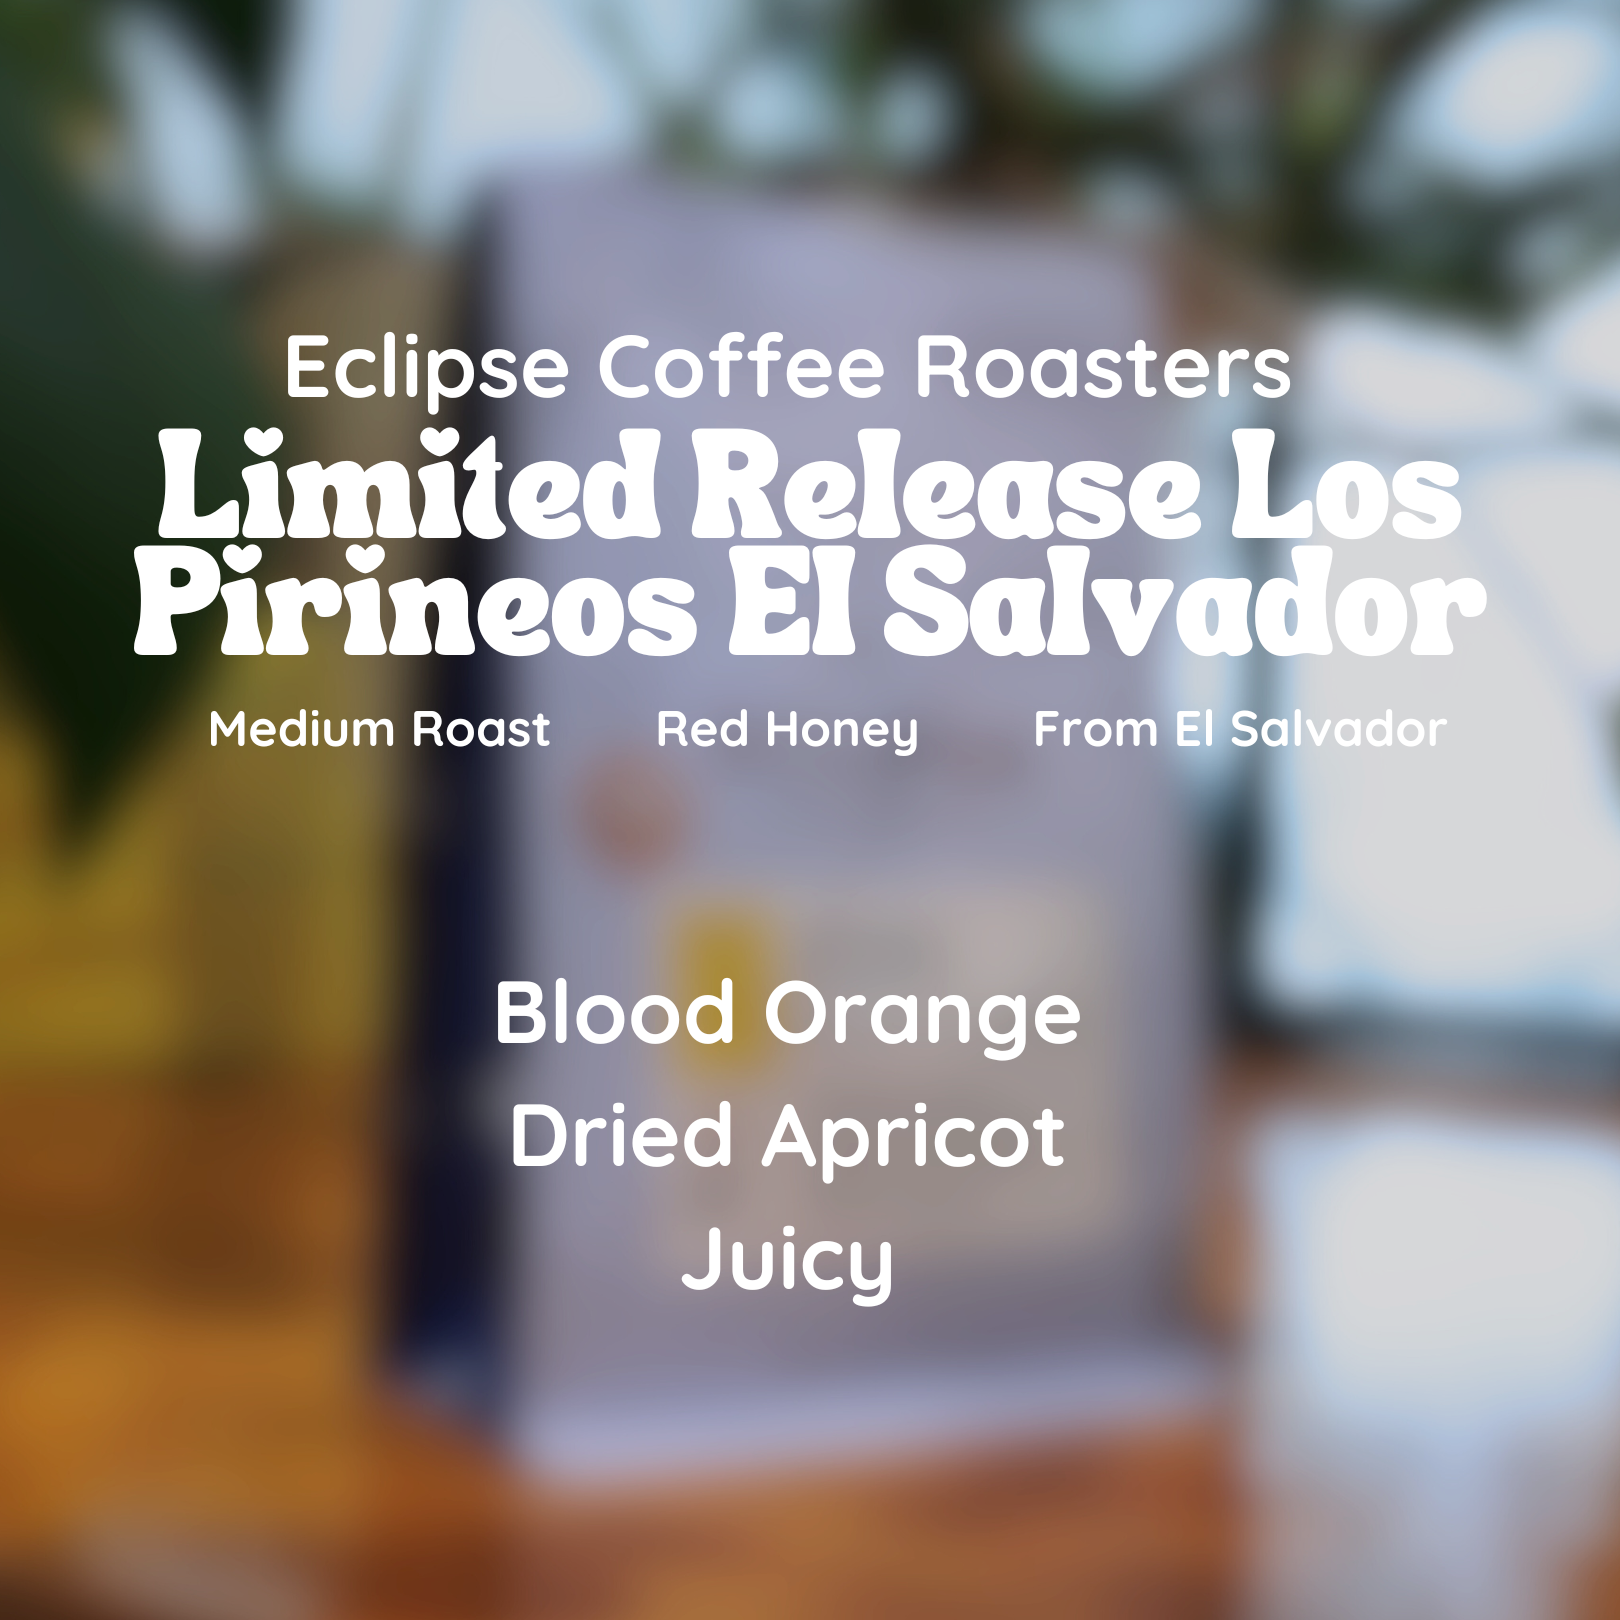 Eclipse Coffee Roasters Limited Release Los Pirineos El Salvador Coffee Beans